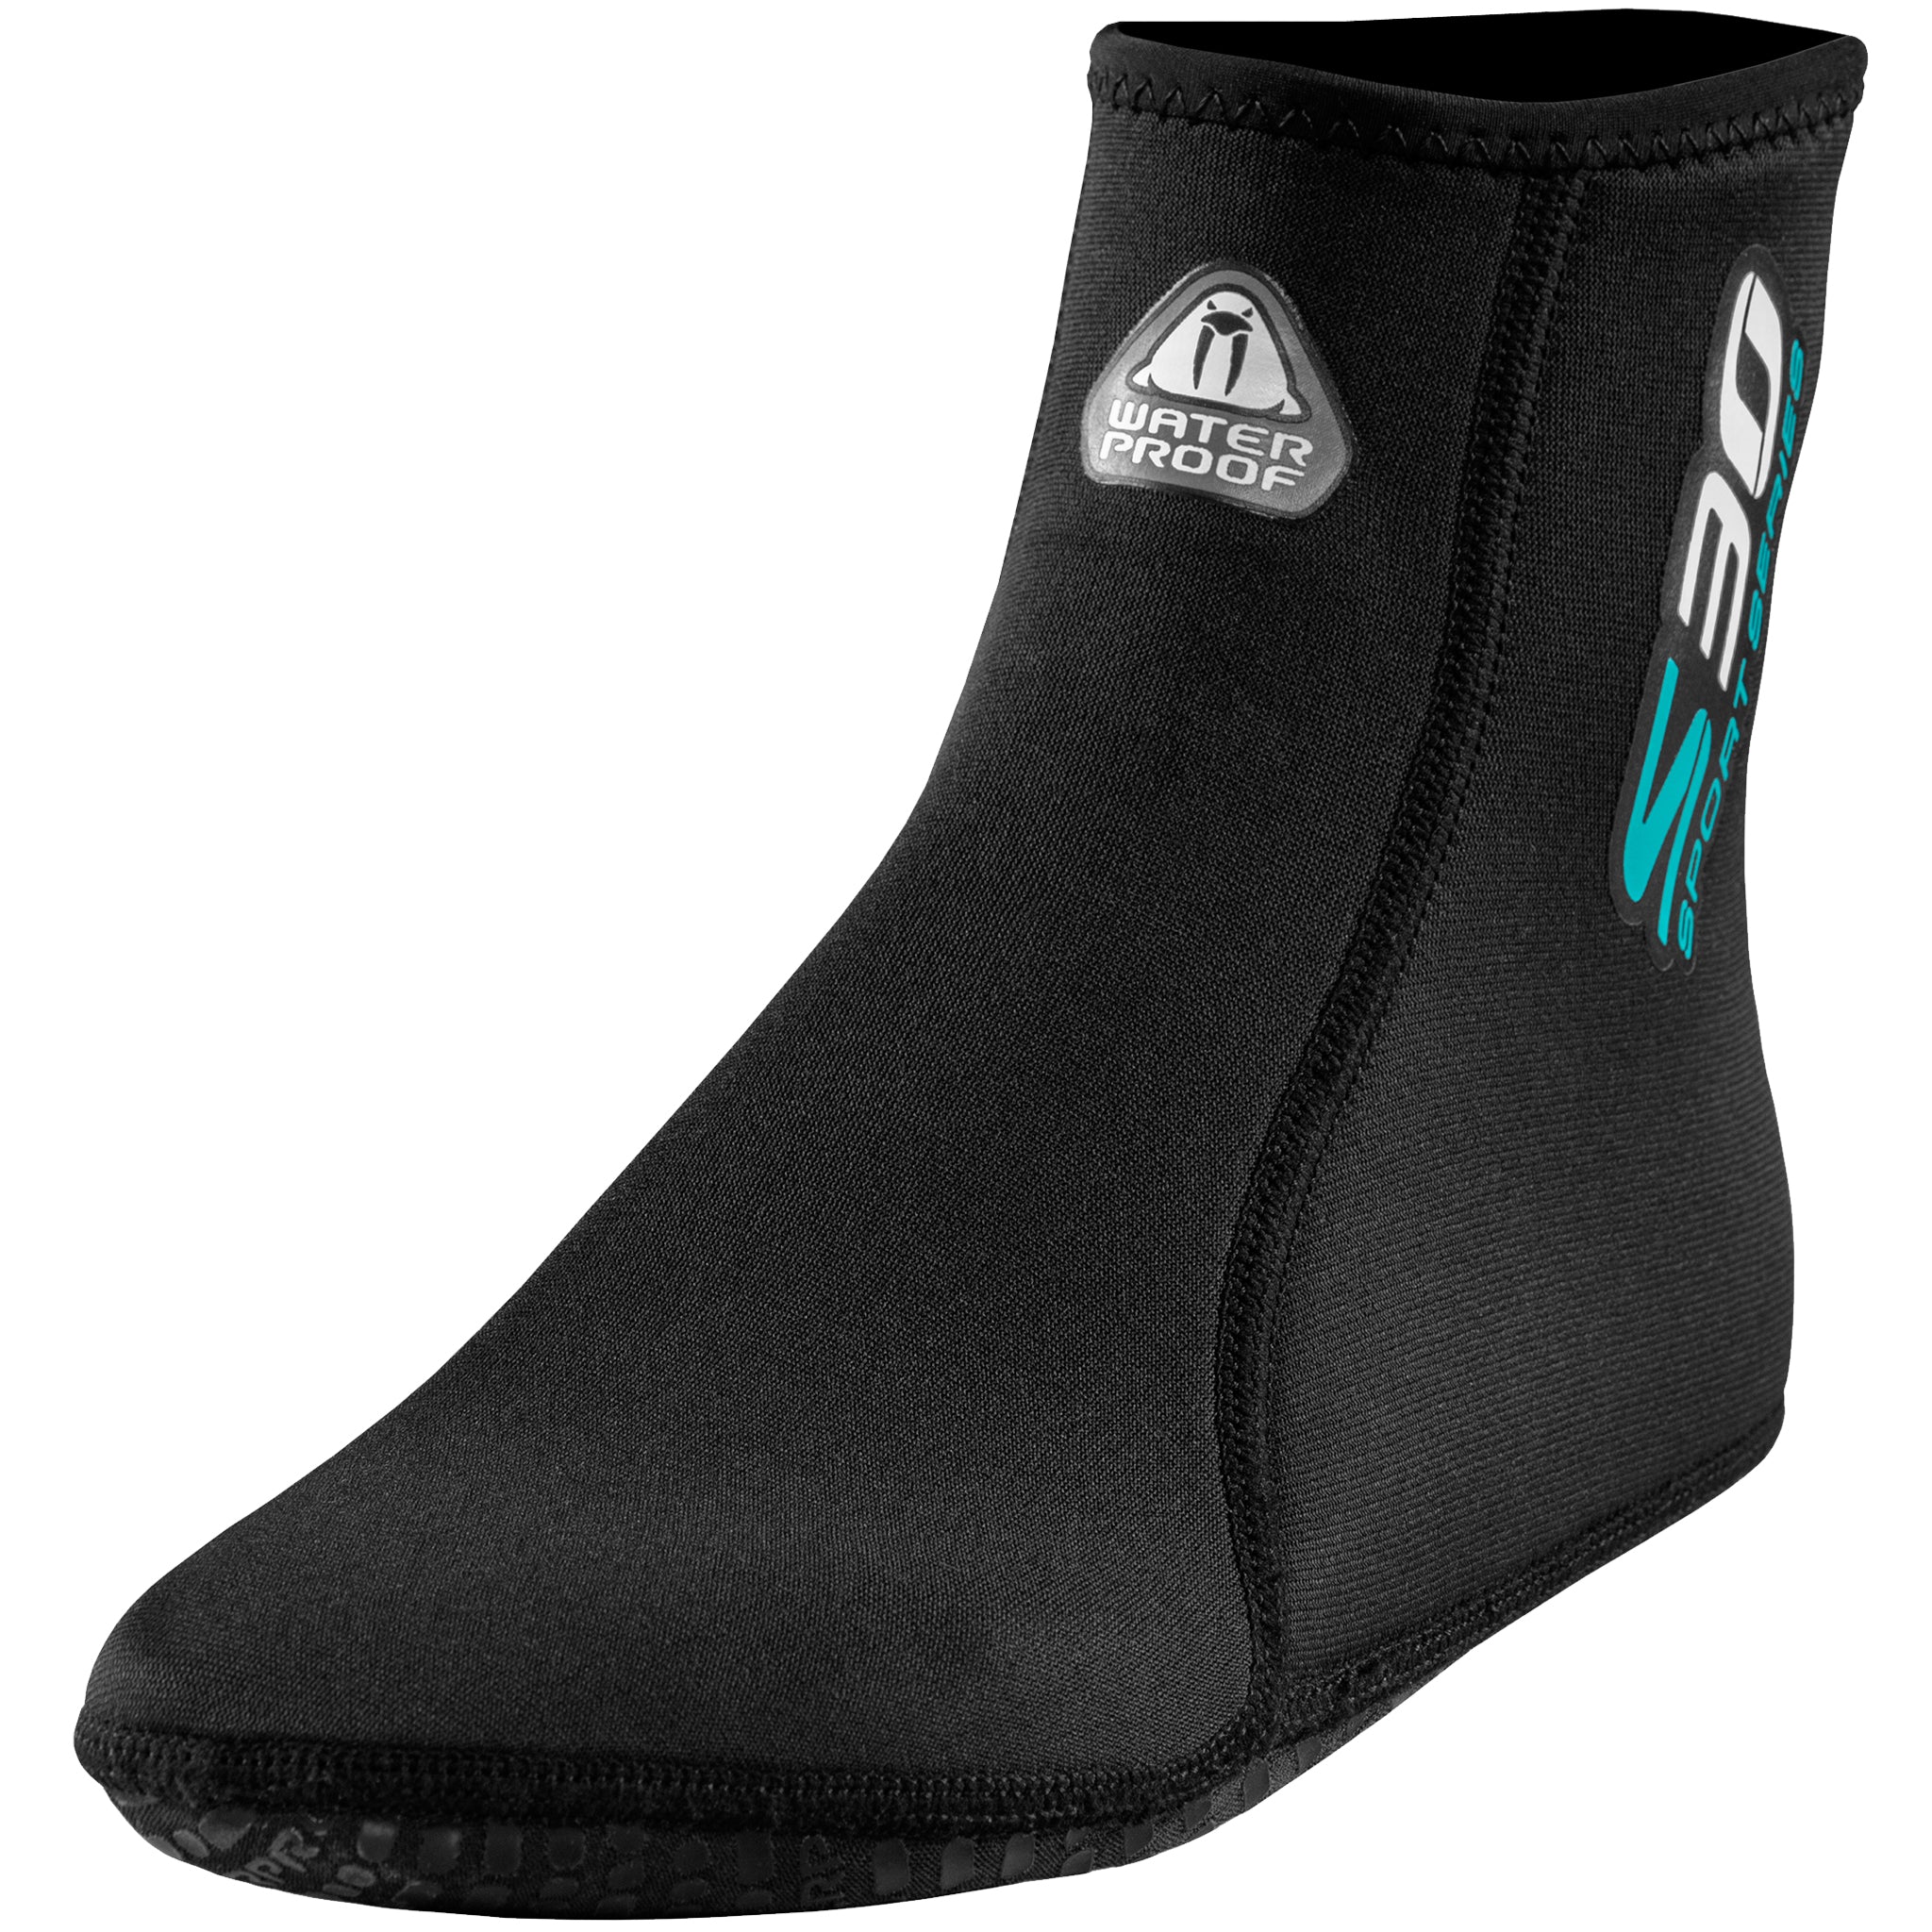 Waterproof S30 2mm Neoprene Wetsuit Socks - Single sock